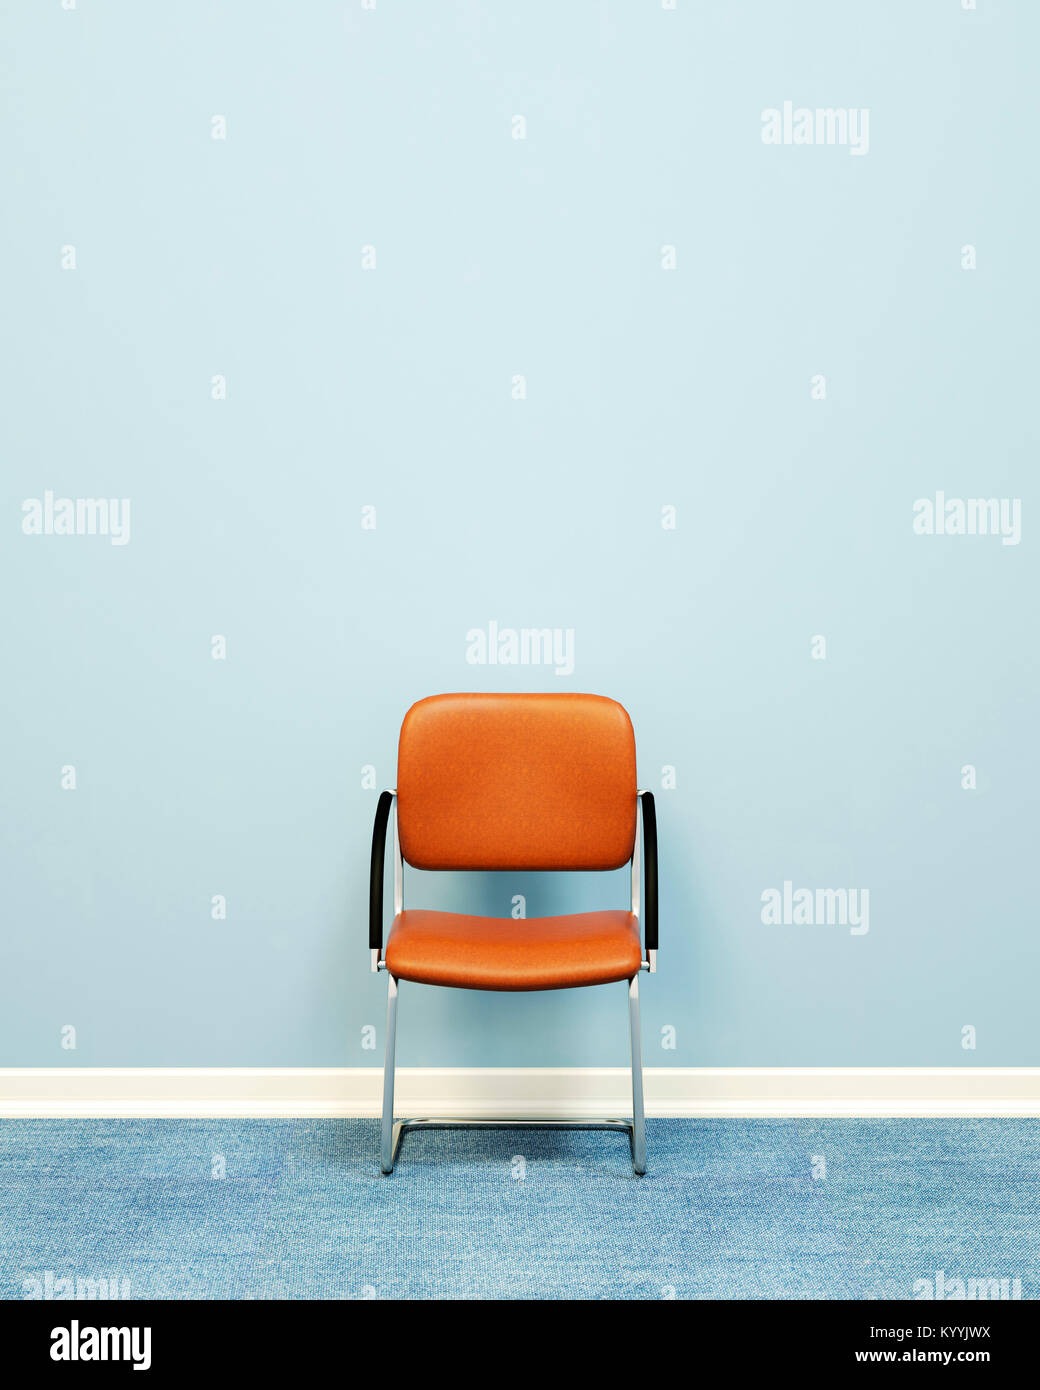 Une chaise contre un mur dans une salle vide Banque D'Images